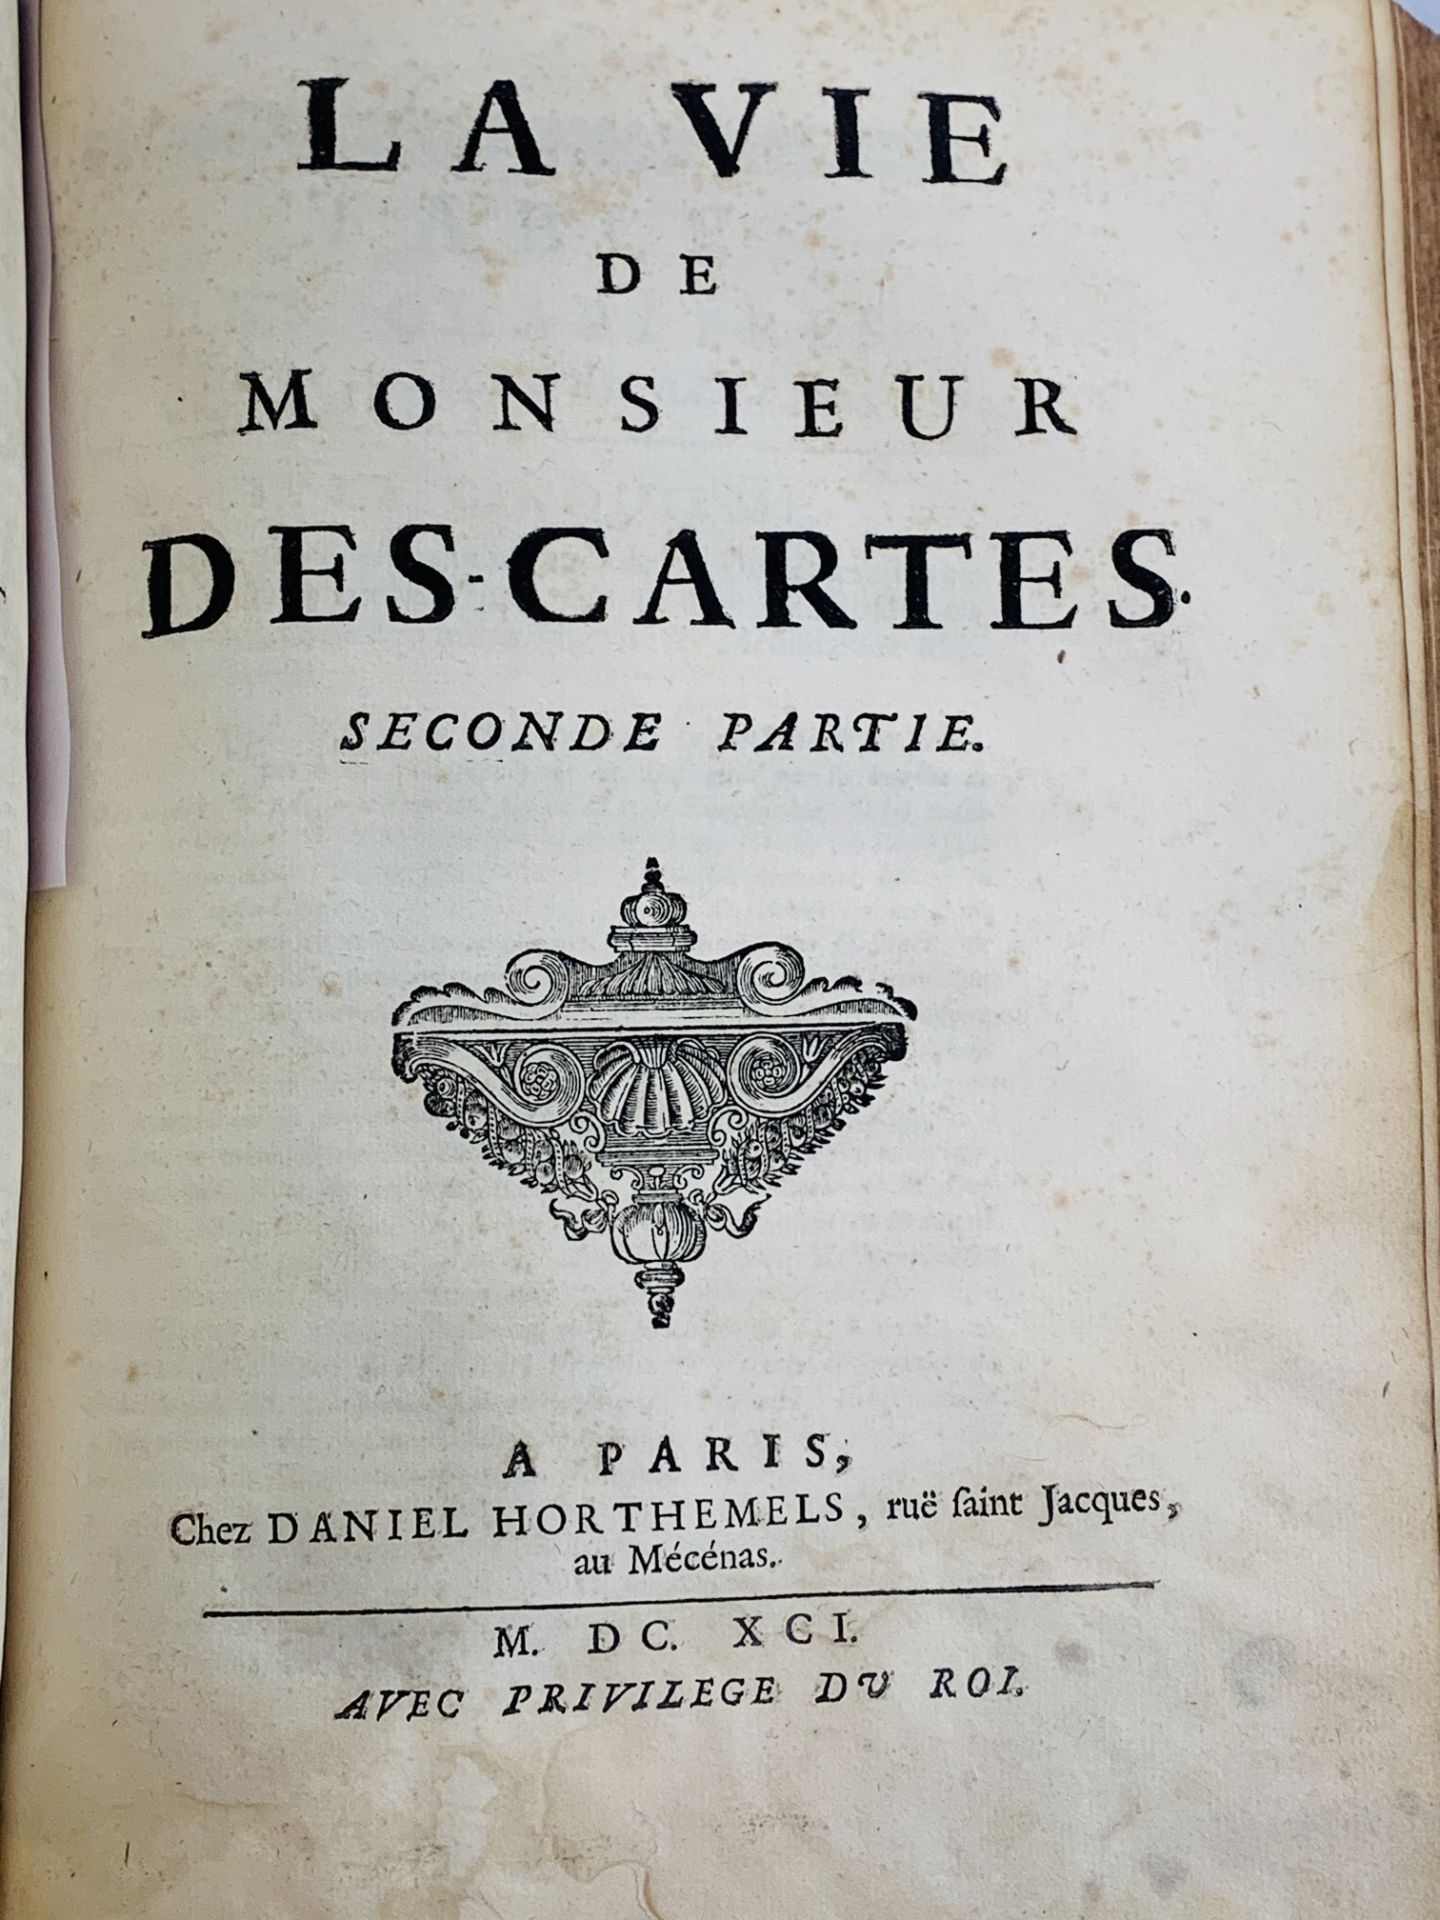 La Vie de Monsieur Rene Descartes, by ? Adrien Baillet, 2 volumes bound in 1, published Paris 1691 - Image 3 of 3